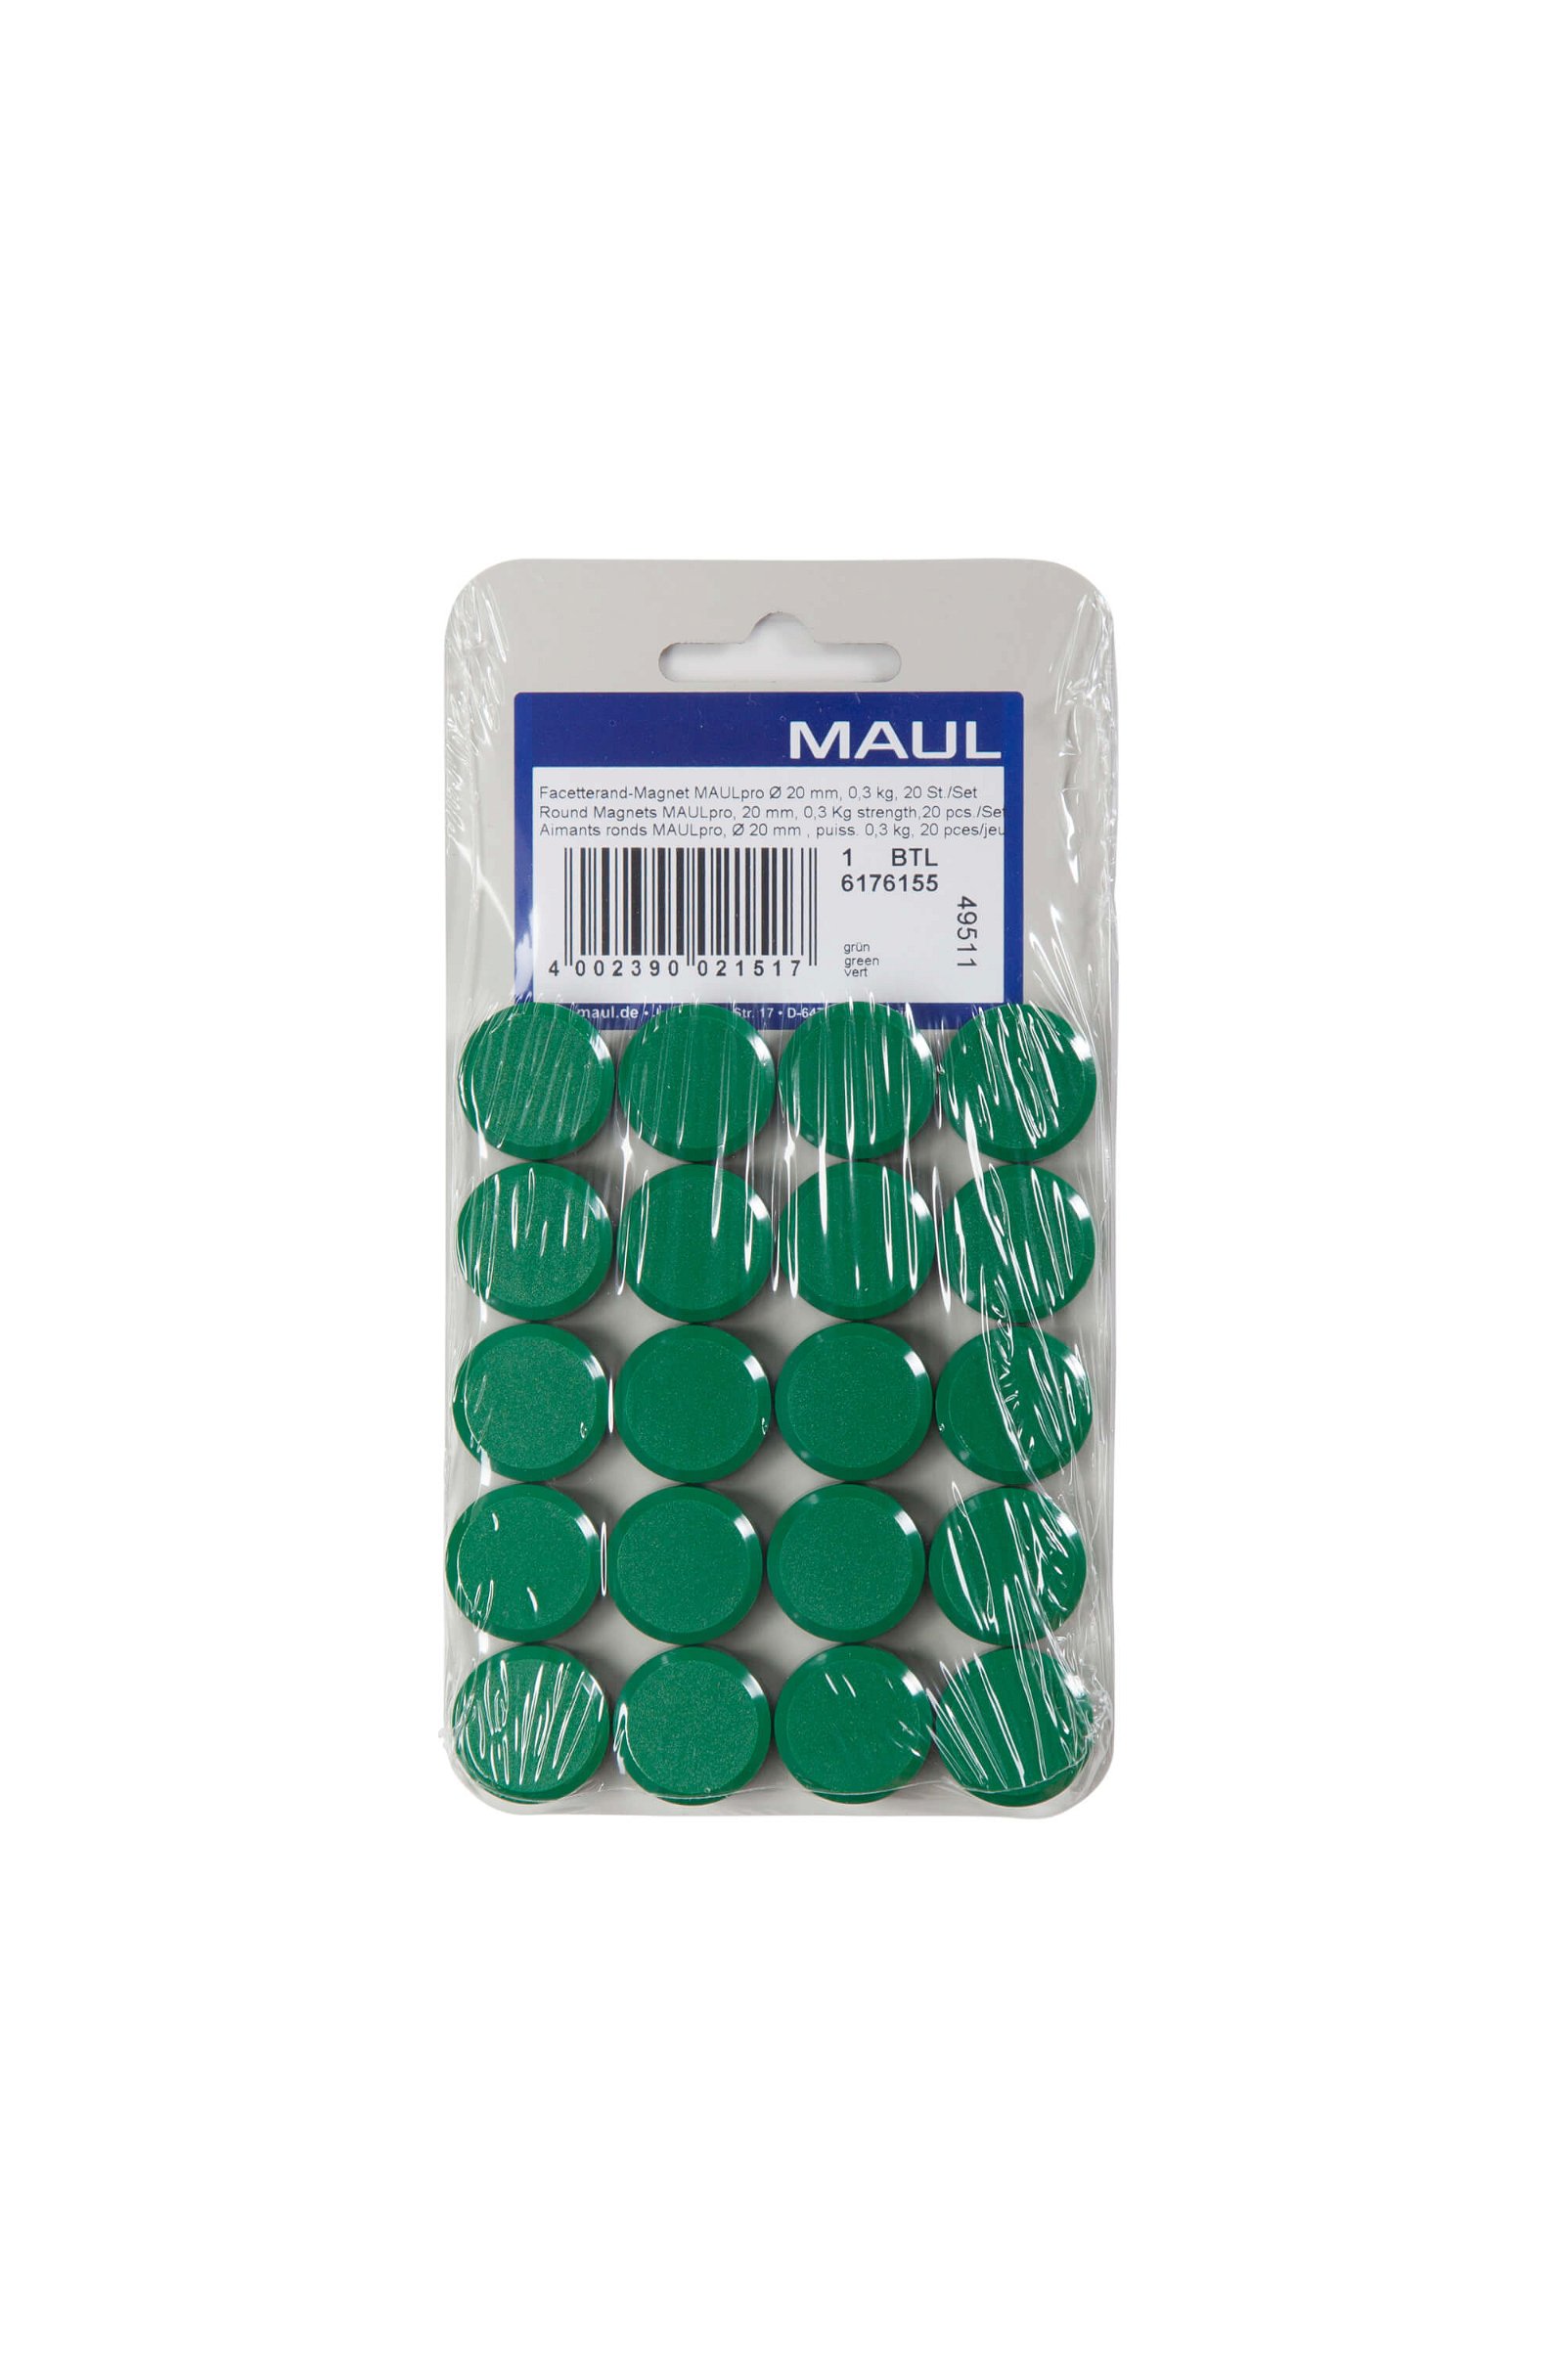 Facetterand-Magnet MAULpro Ø 20 mm, 0,3 kg, 20 St./Set, grün